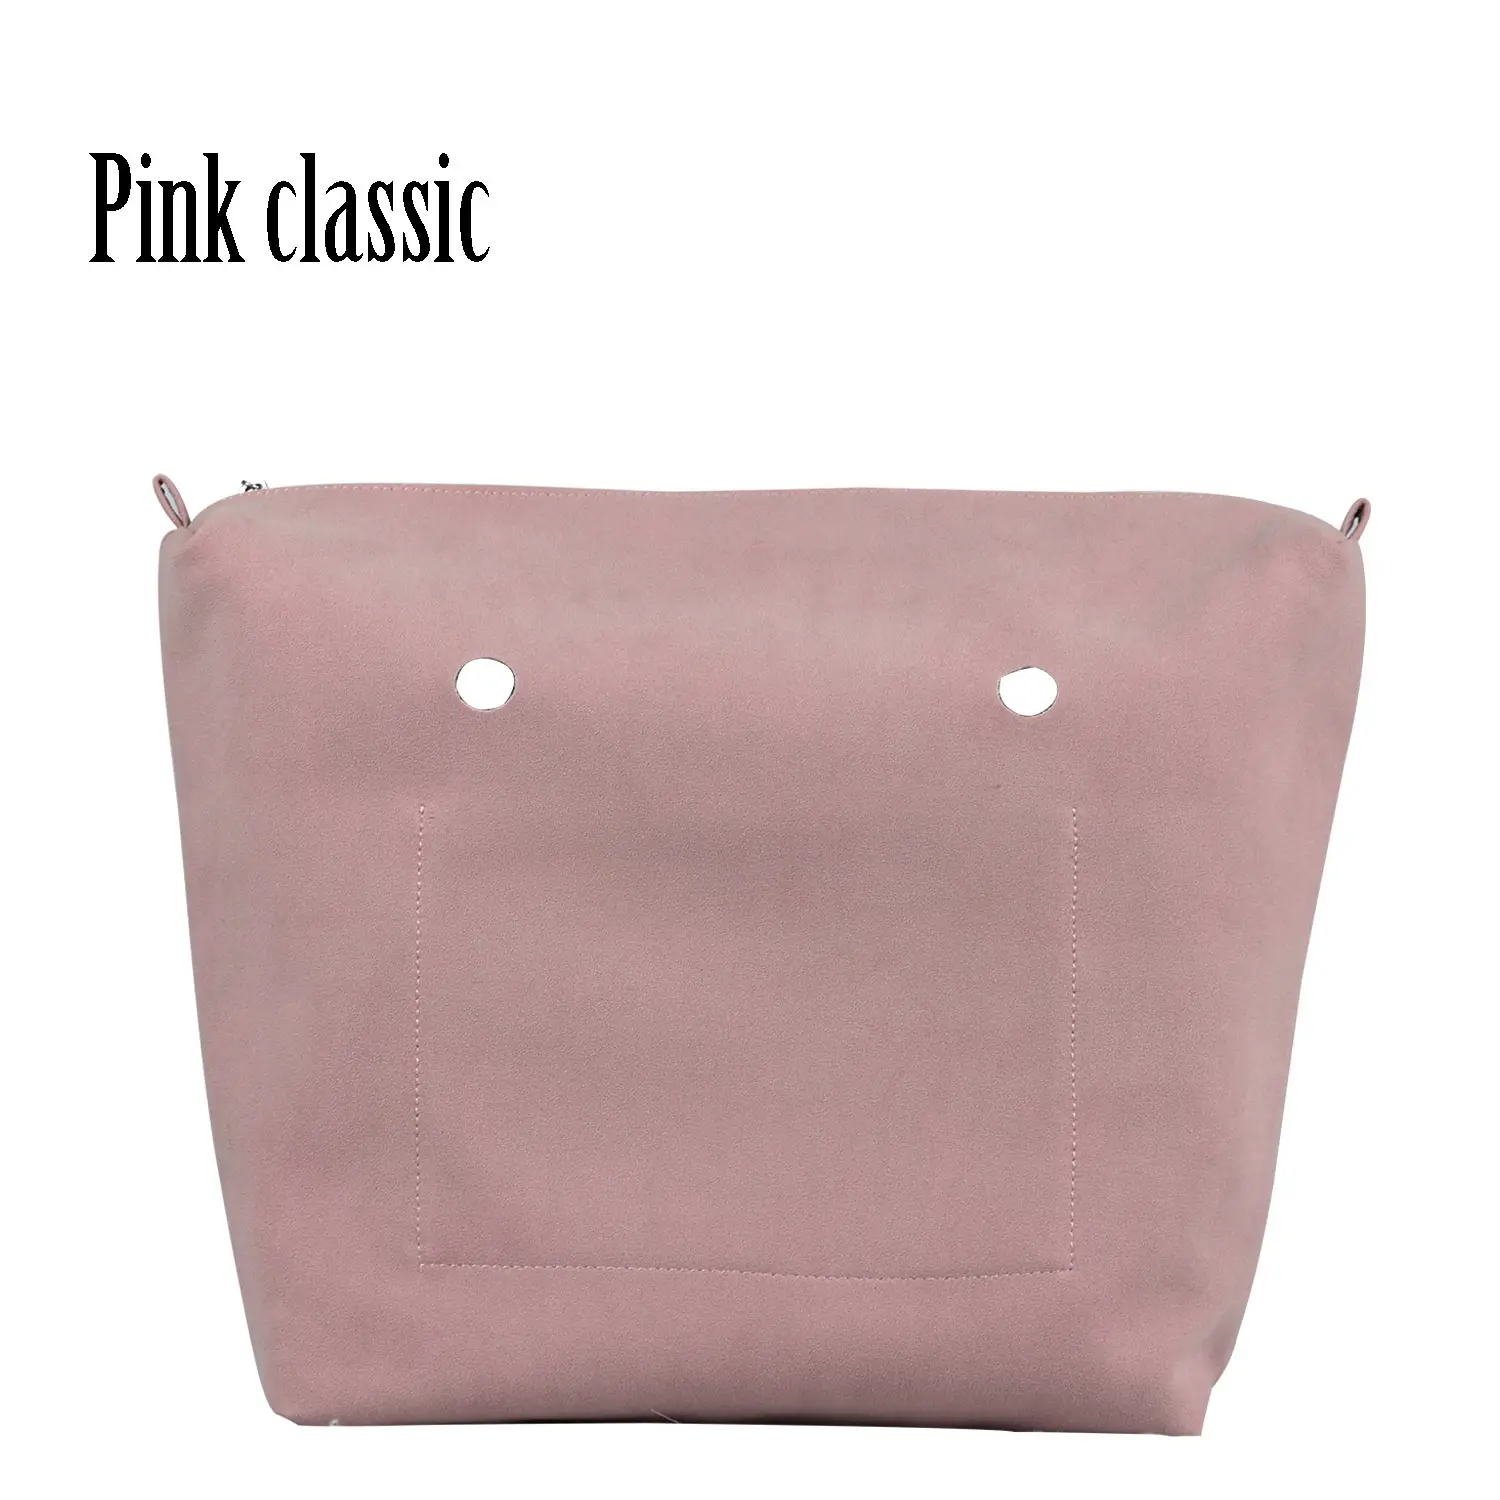 Huntfun Пу нубук матовая кожа водонепроницаемая внутренняя подкладка карман на молнии для Obag Классическая Мини Подкладка Вставка для O сумка - Цвет: pink classic